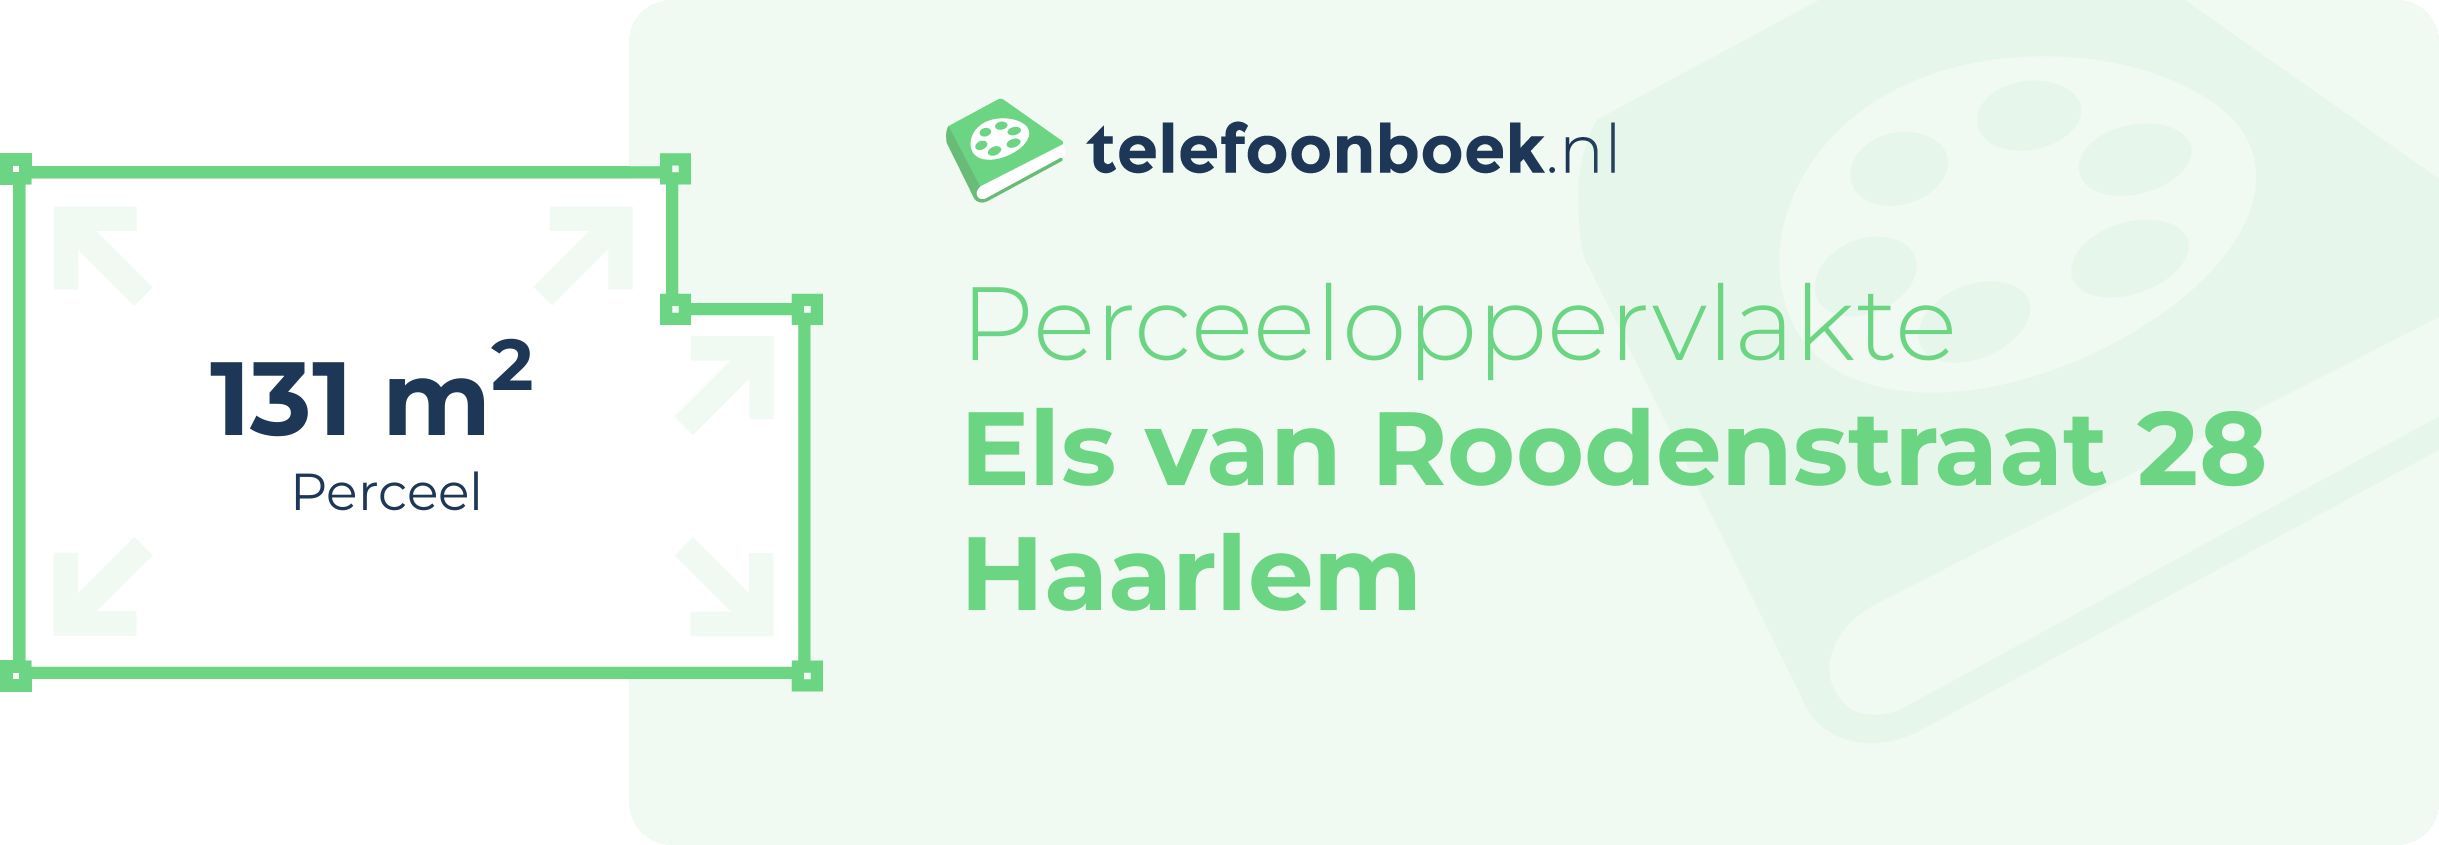 Perceeloppervlakte Els Van Roodenstraat 28 Haarlem